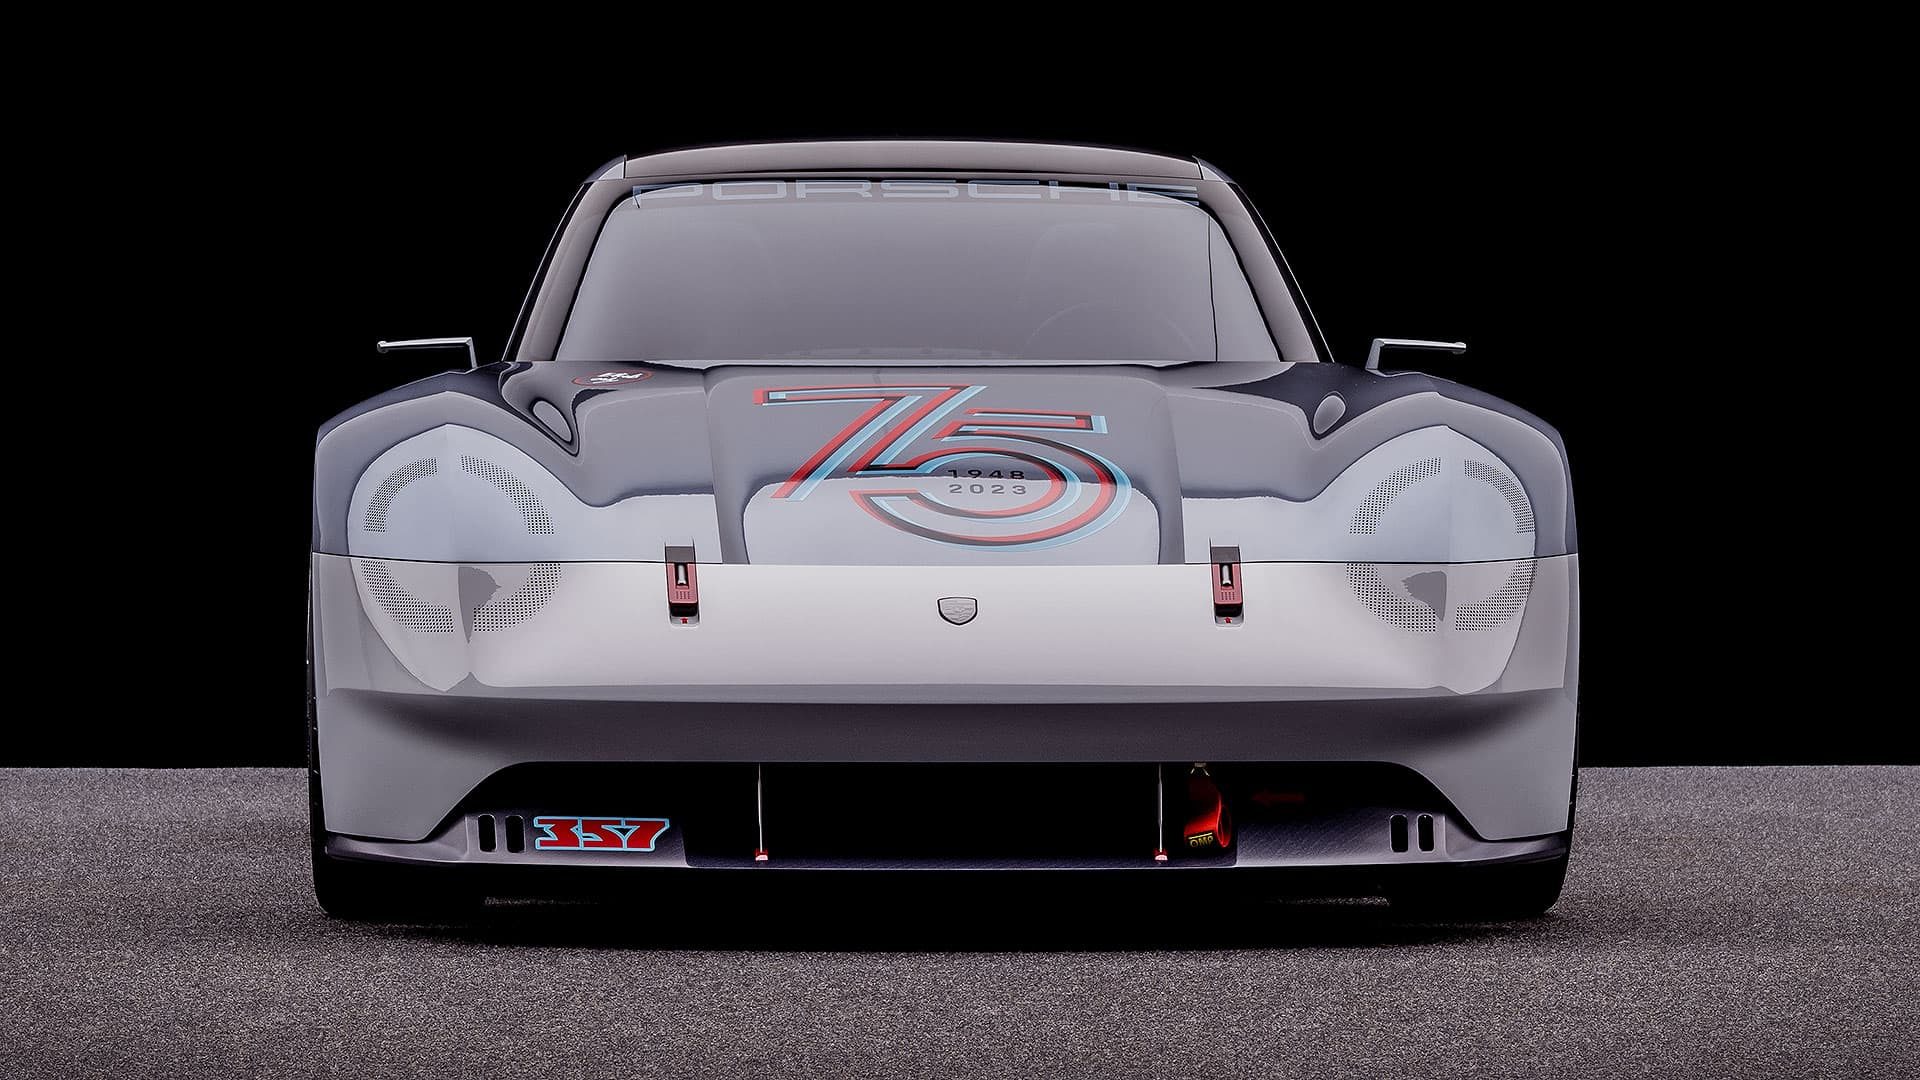 Porsche Vision 357 concept car